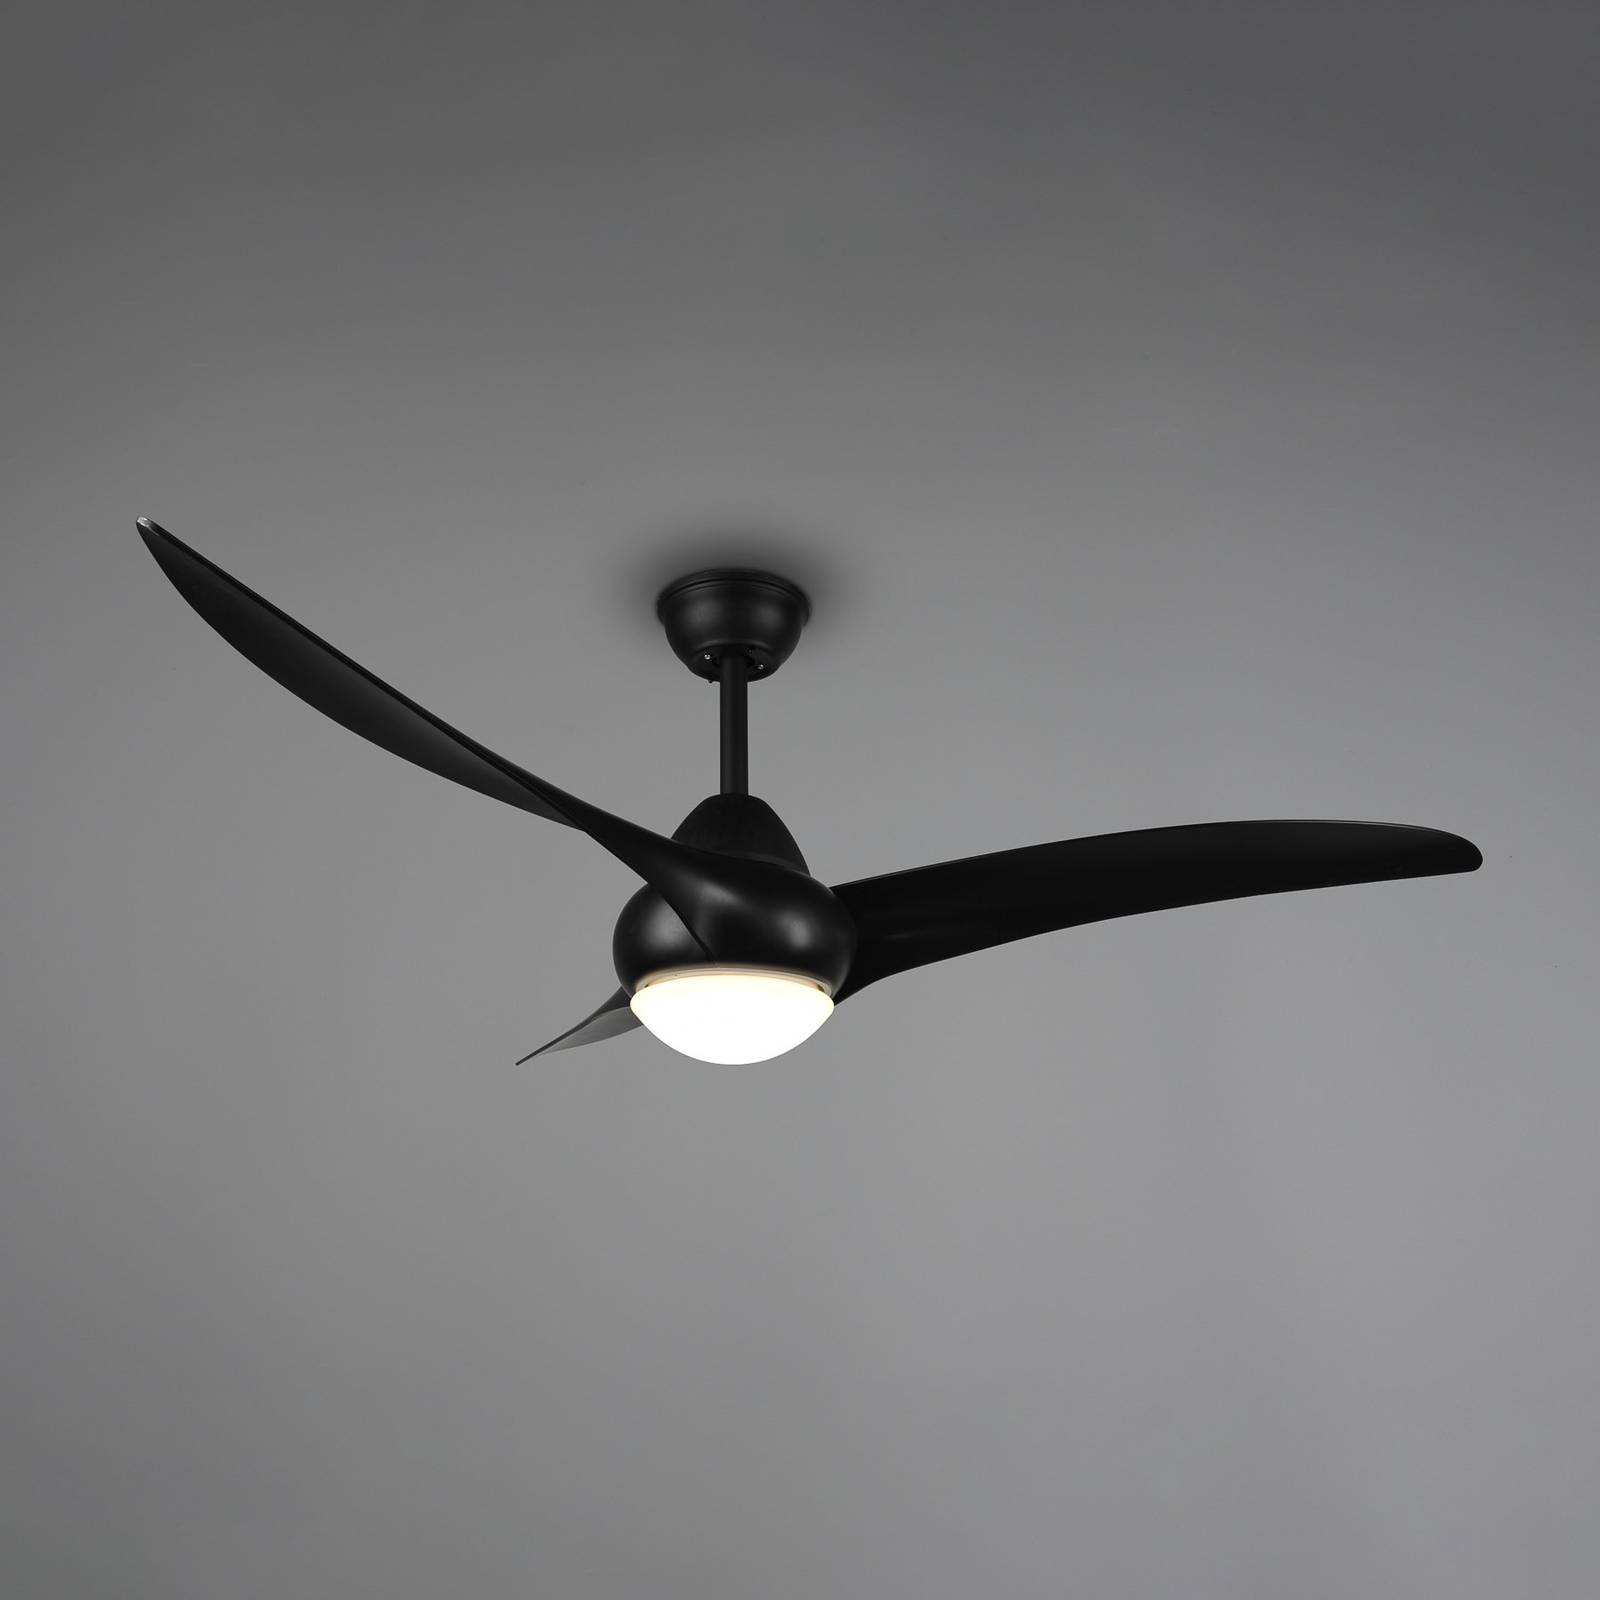 LED-Ventilator Alesund mit Fernbedienung, schwarz